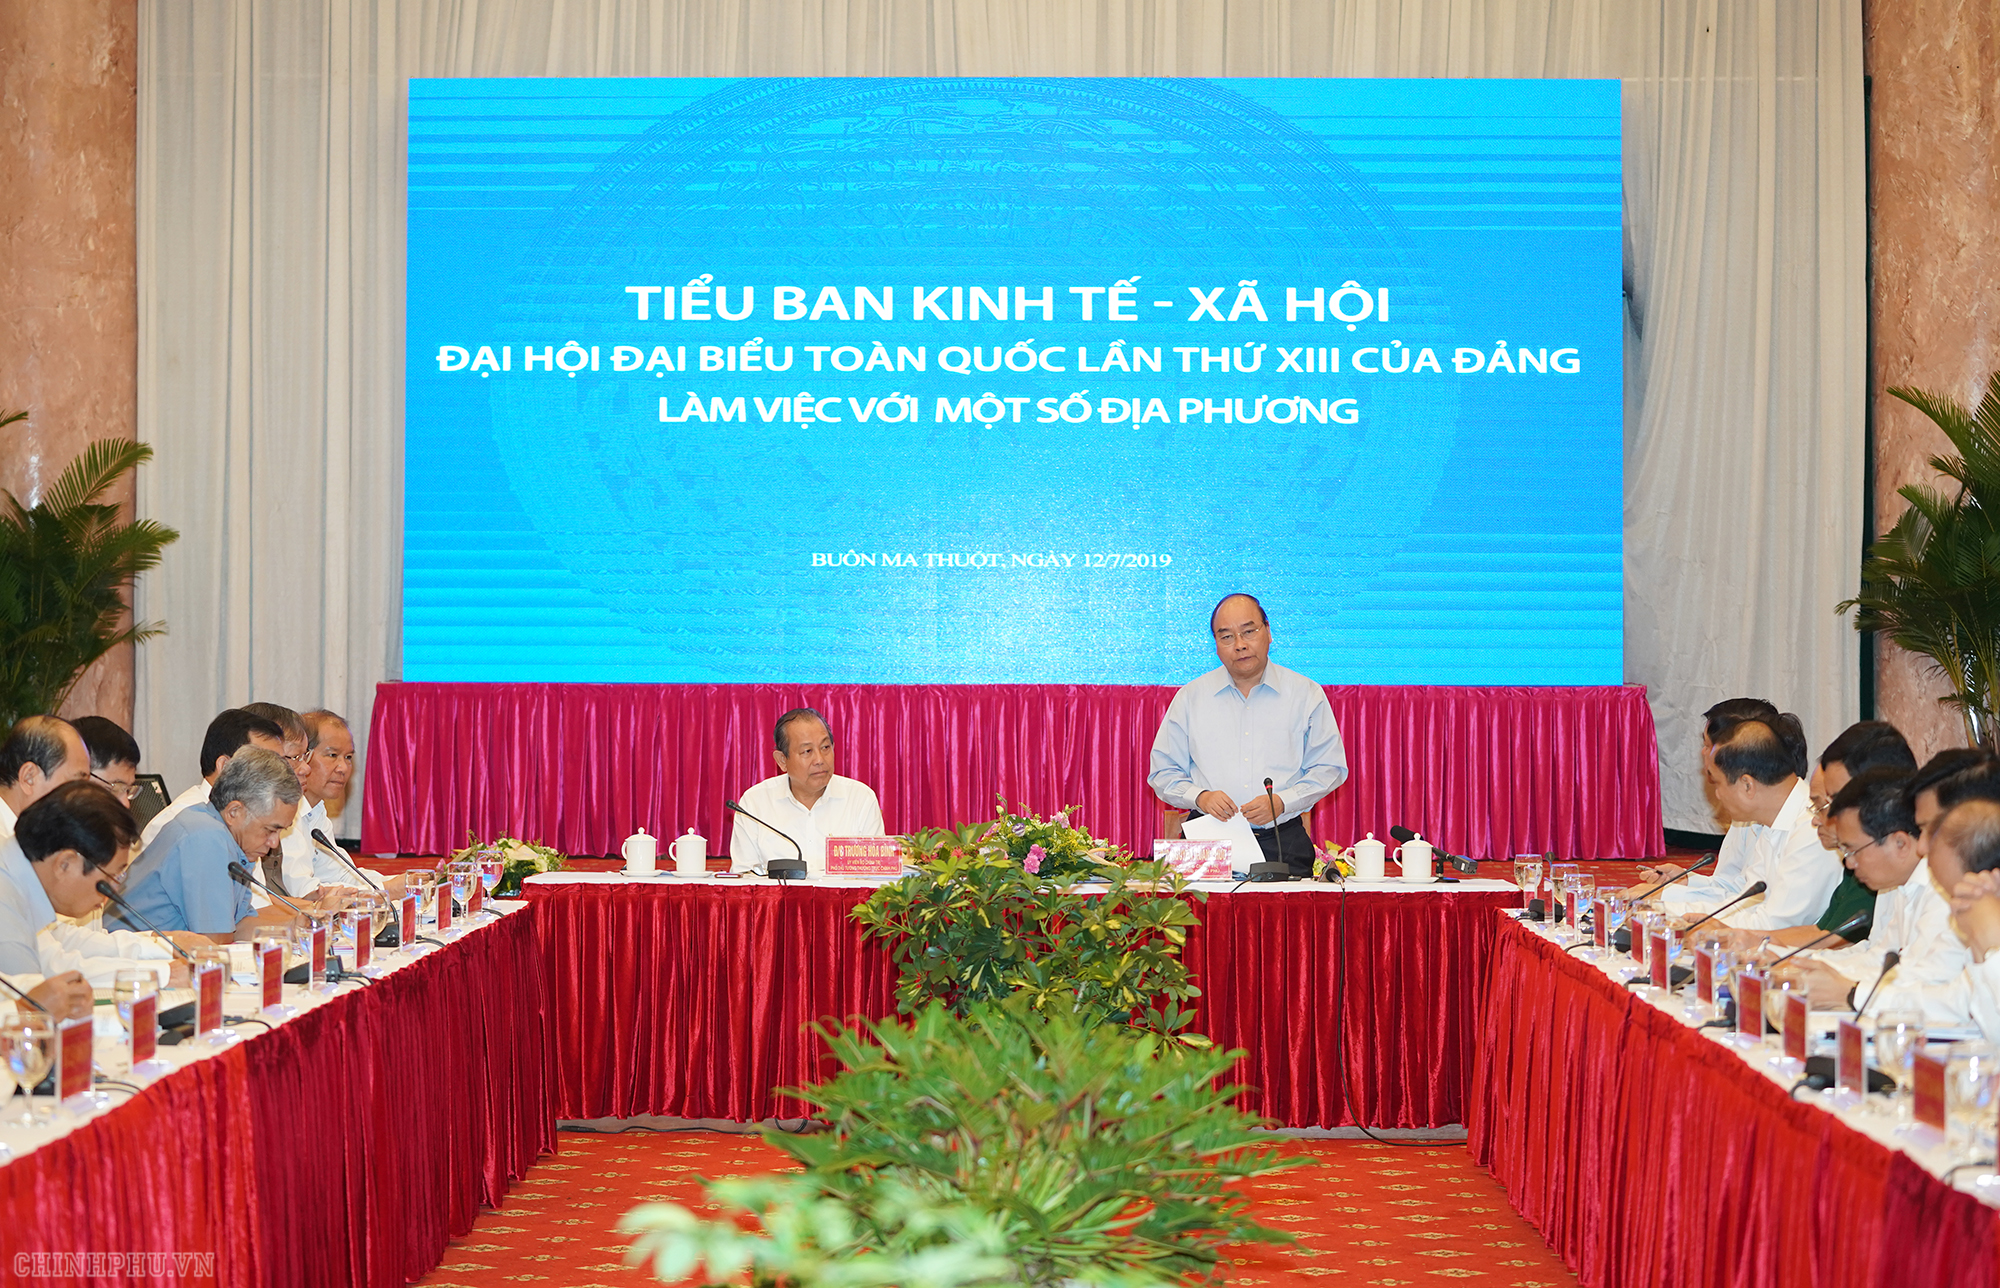 Thủ tướng chủ trì họp Tiểu ban KTXH với địa phương miền Trung, Tây Ngu